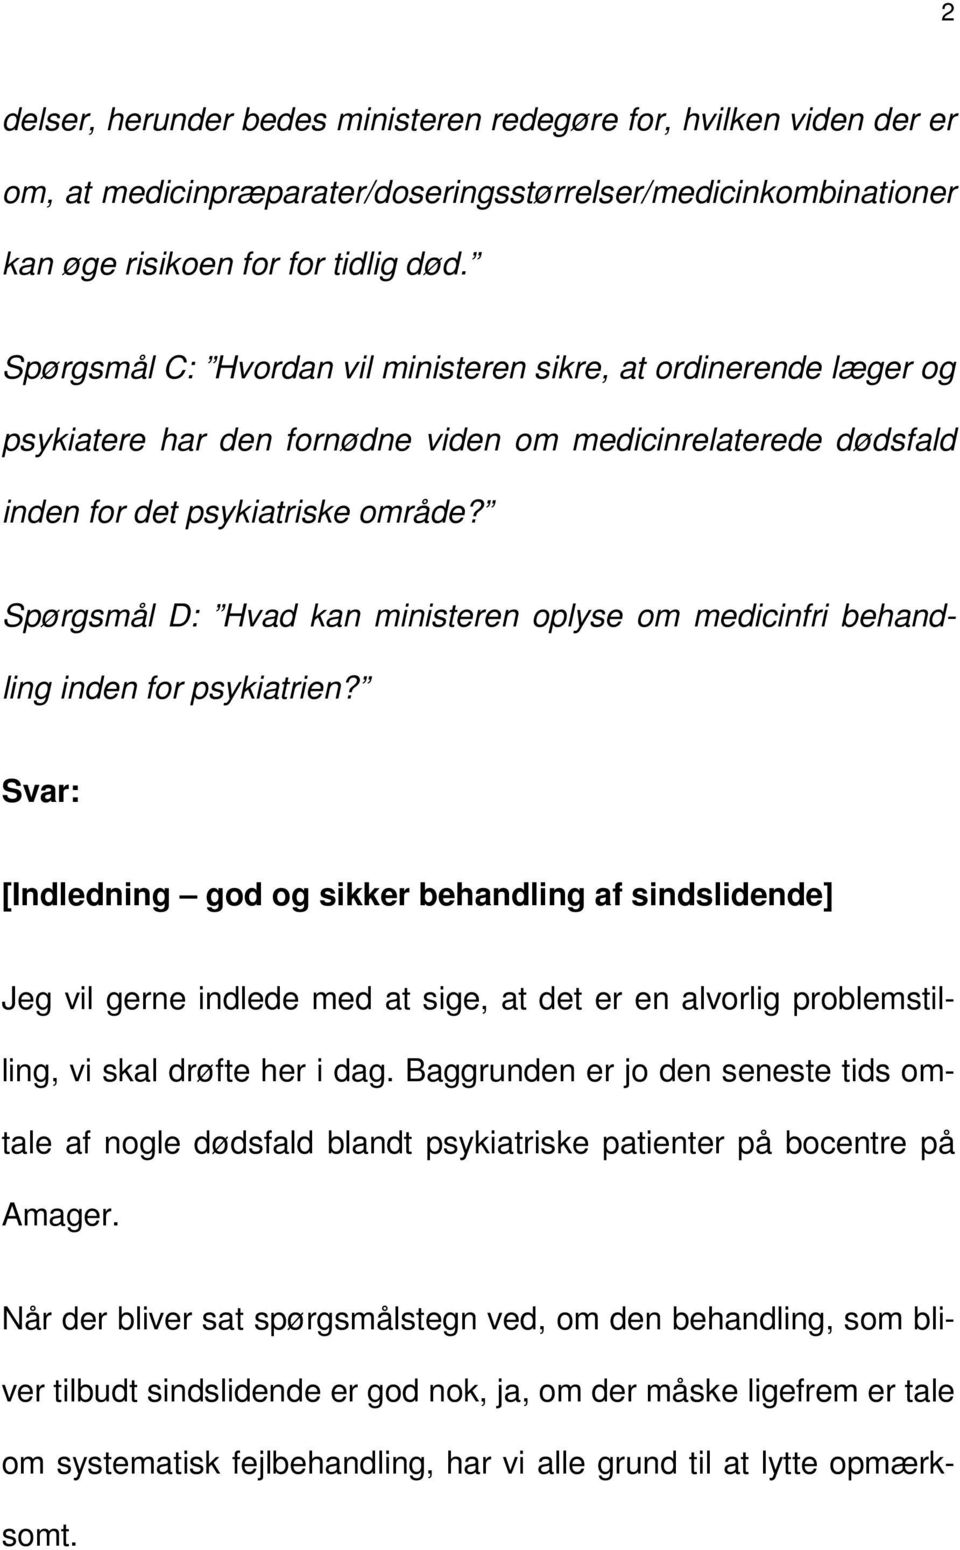 Spørgsmål D: Hvad kan ministeren oplyse om medicinfri behandling inden for psykiatrien?